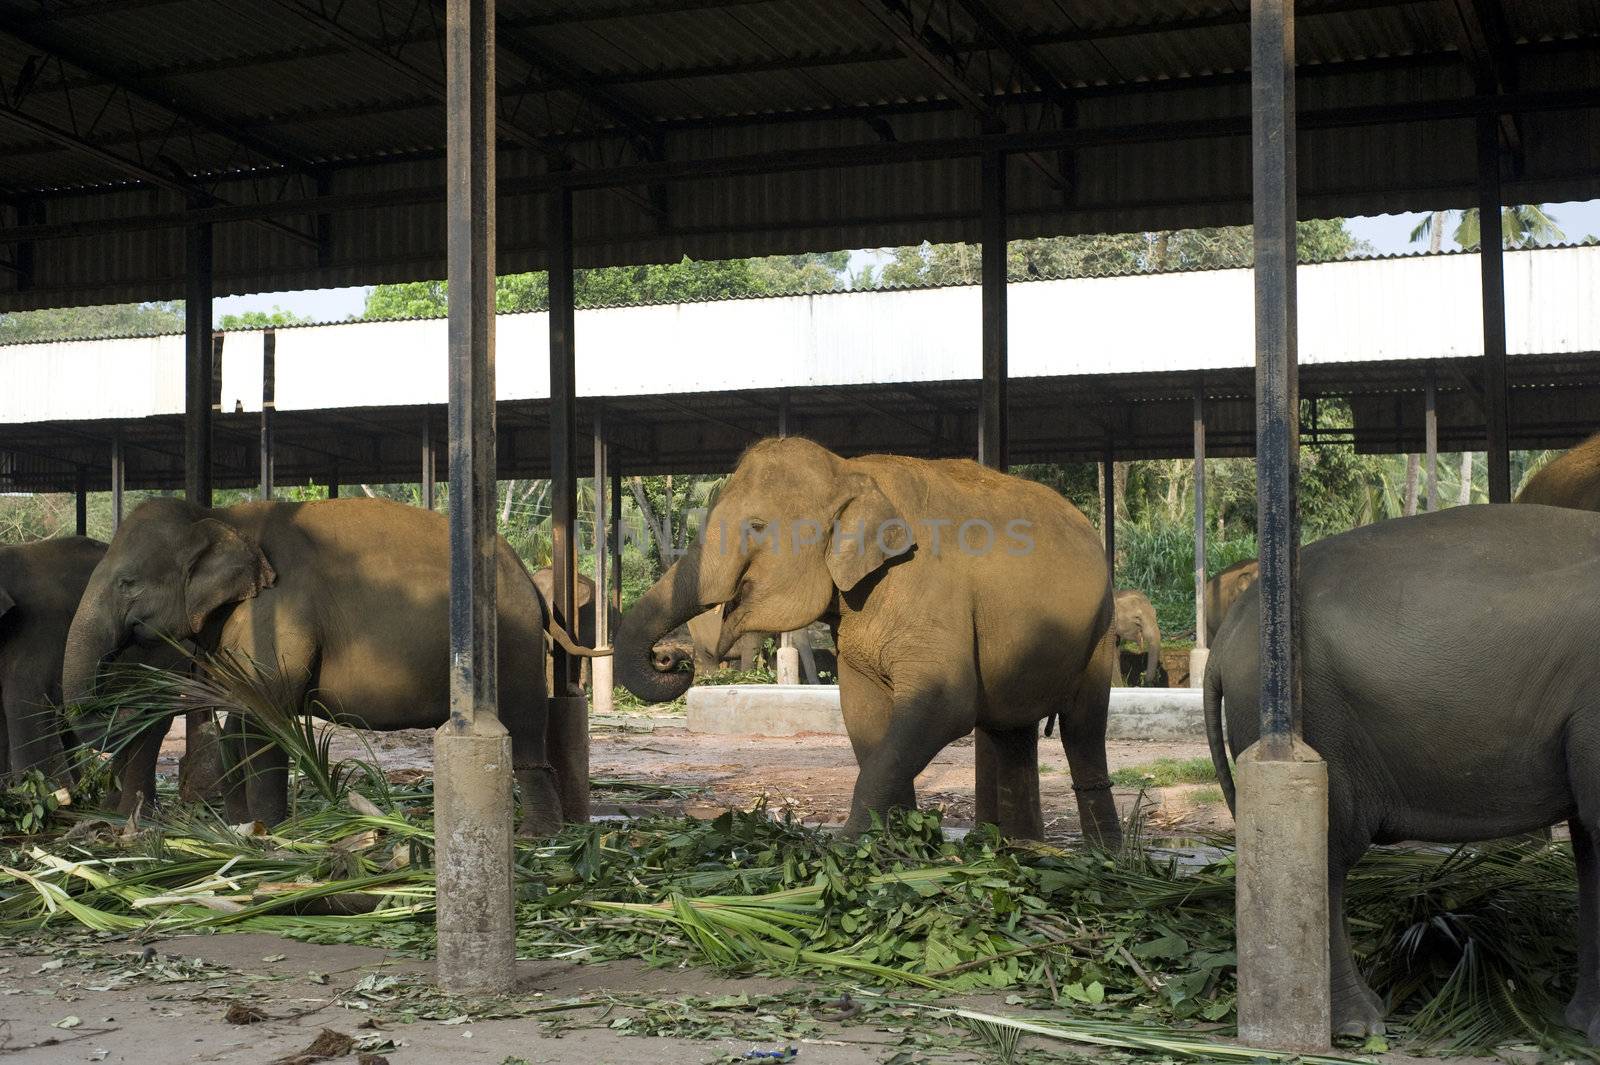 Group of elephants eating at fence in Pinnawela Elephant orphanage